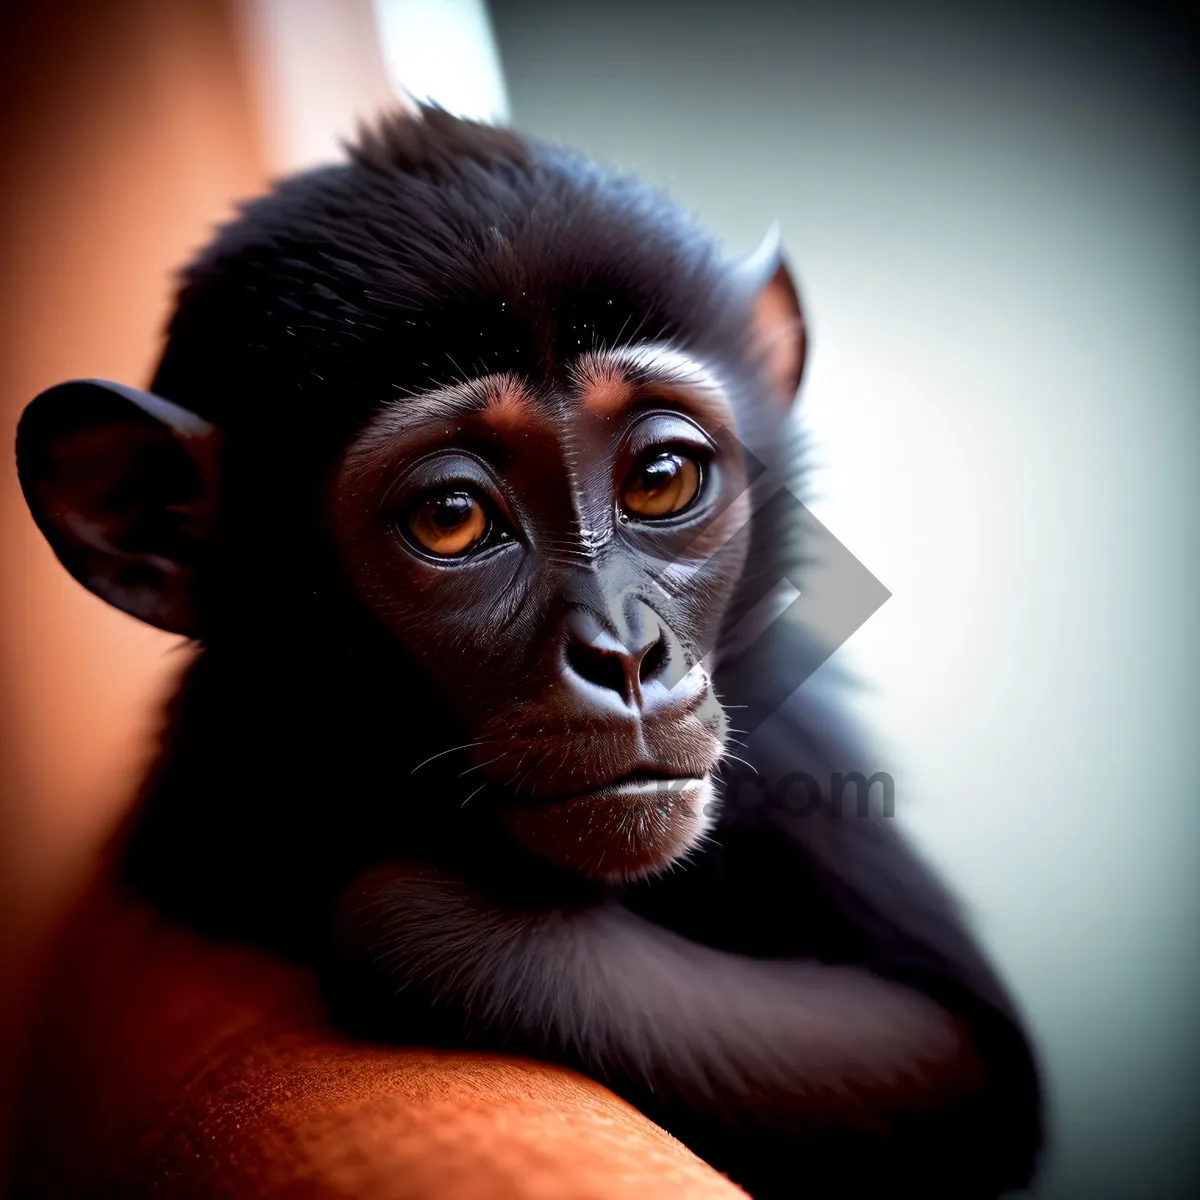 Picture of Primate Family Portrait: Chimpanzee, Orangutan, and Gorilla